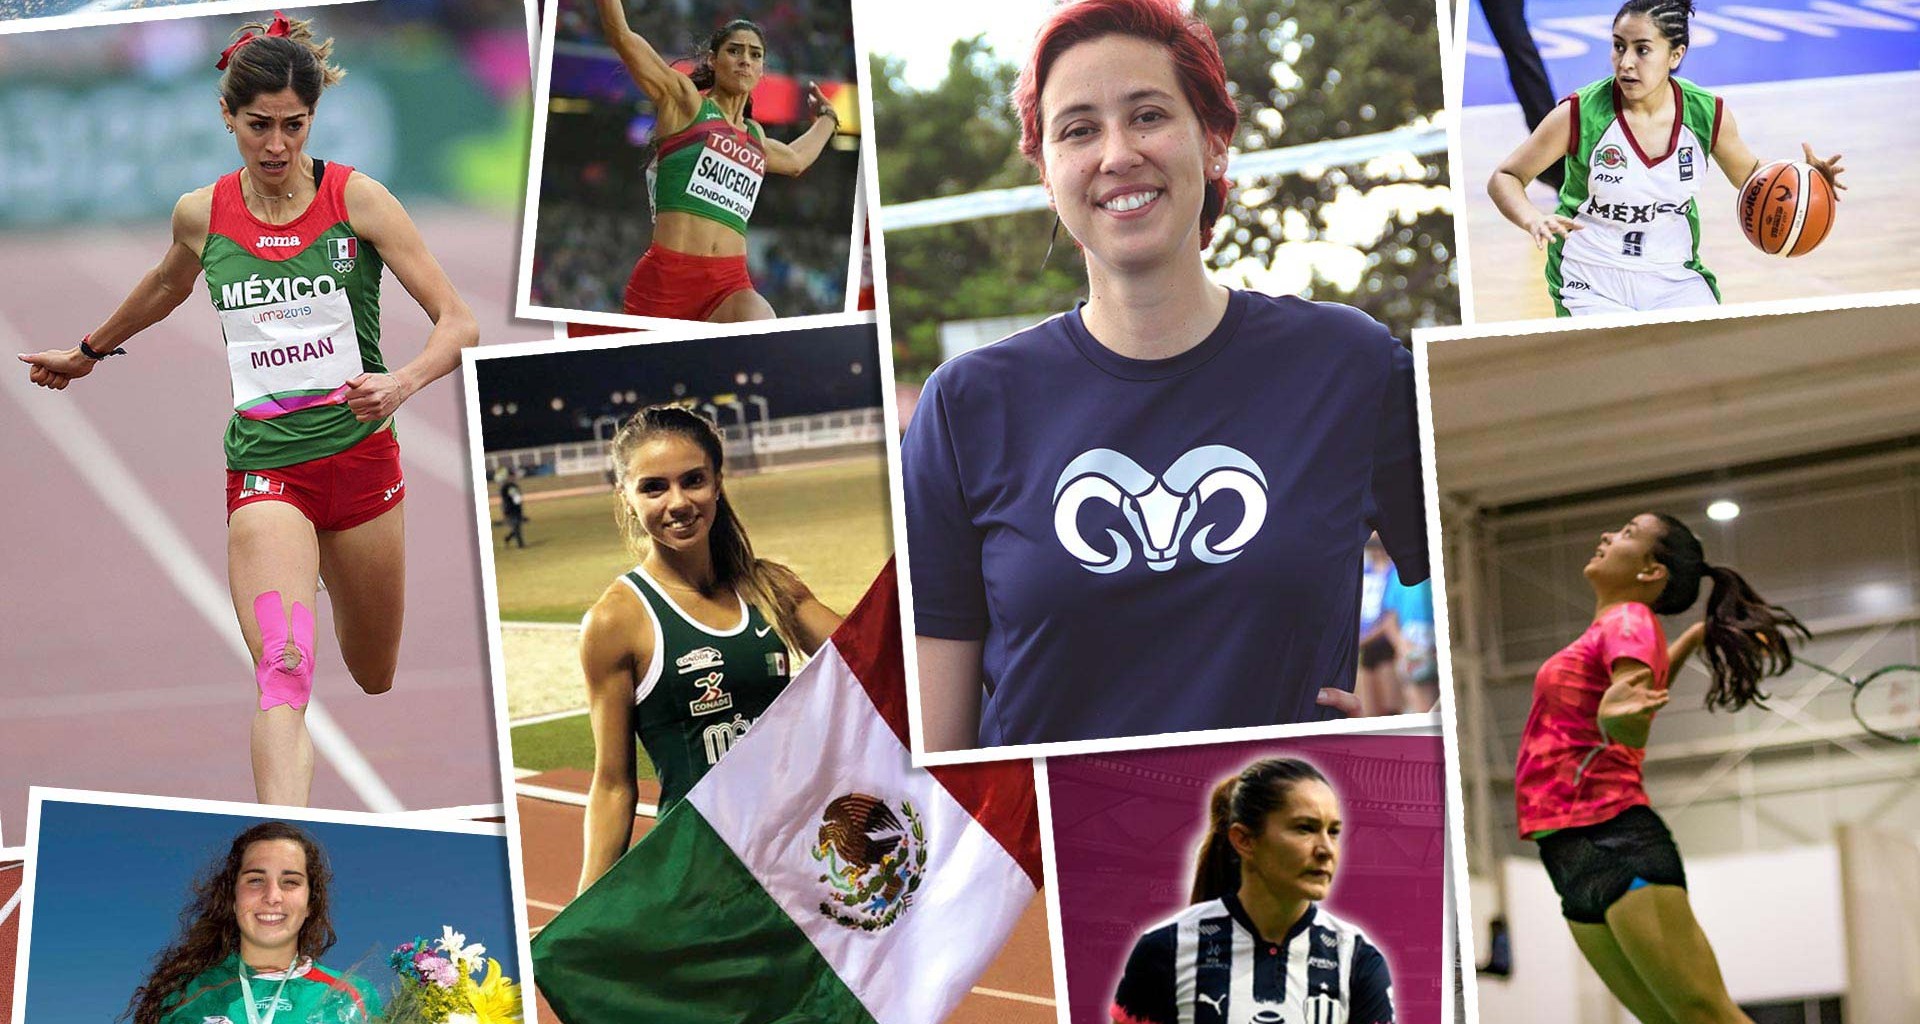 Voleibol, atletismo y bádminton son algunas de las disciplinas en las que mujeres han destacado en representativos de Borregos.